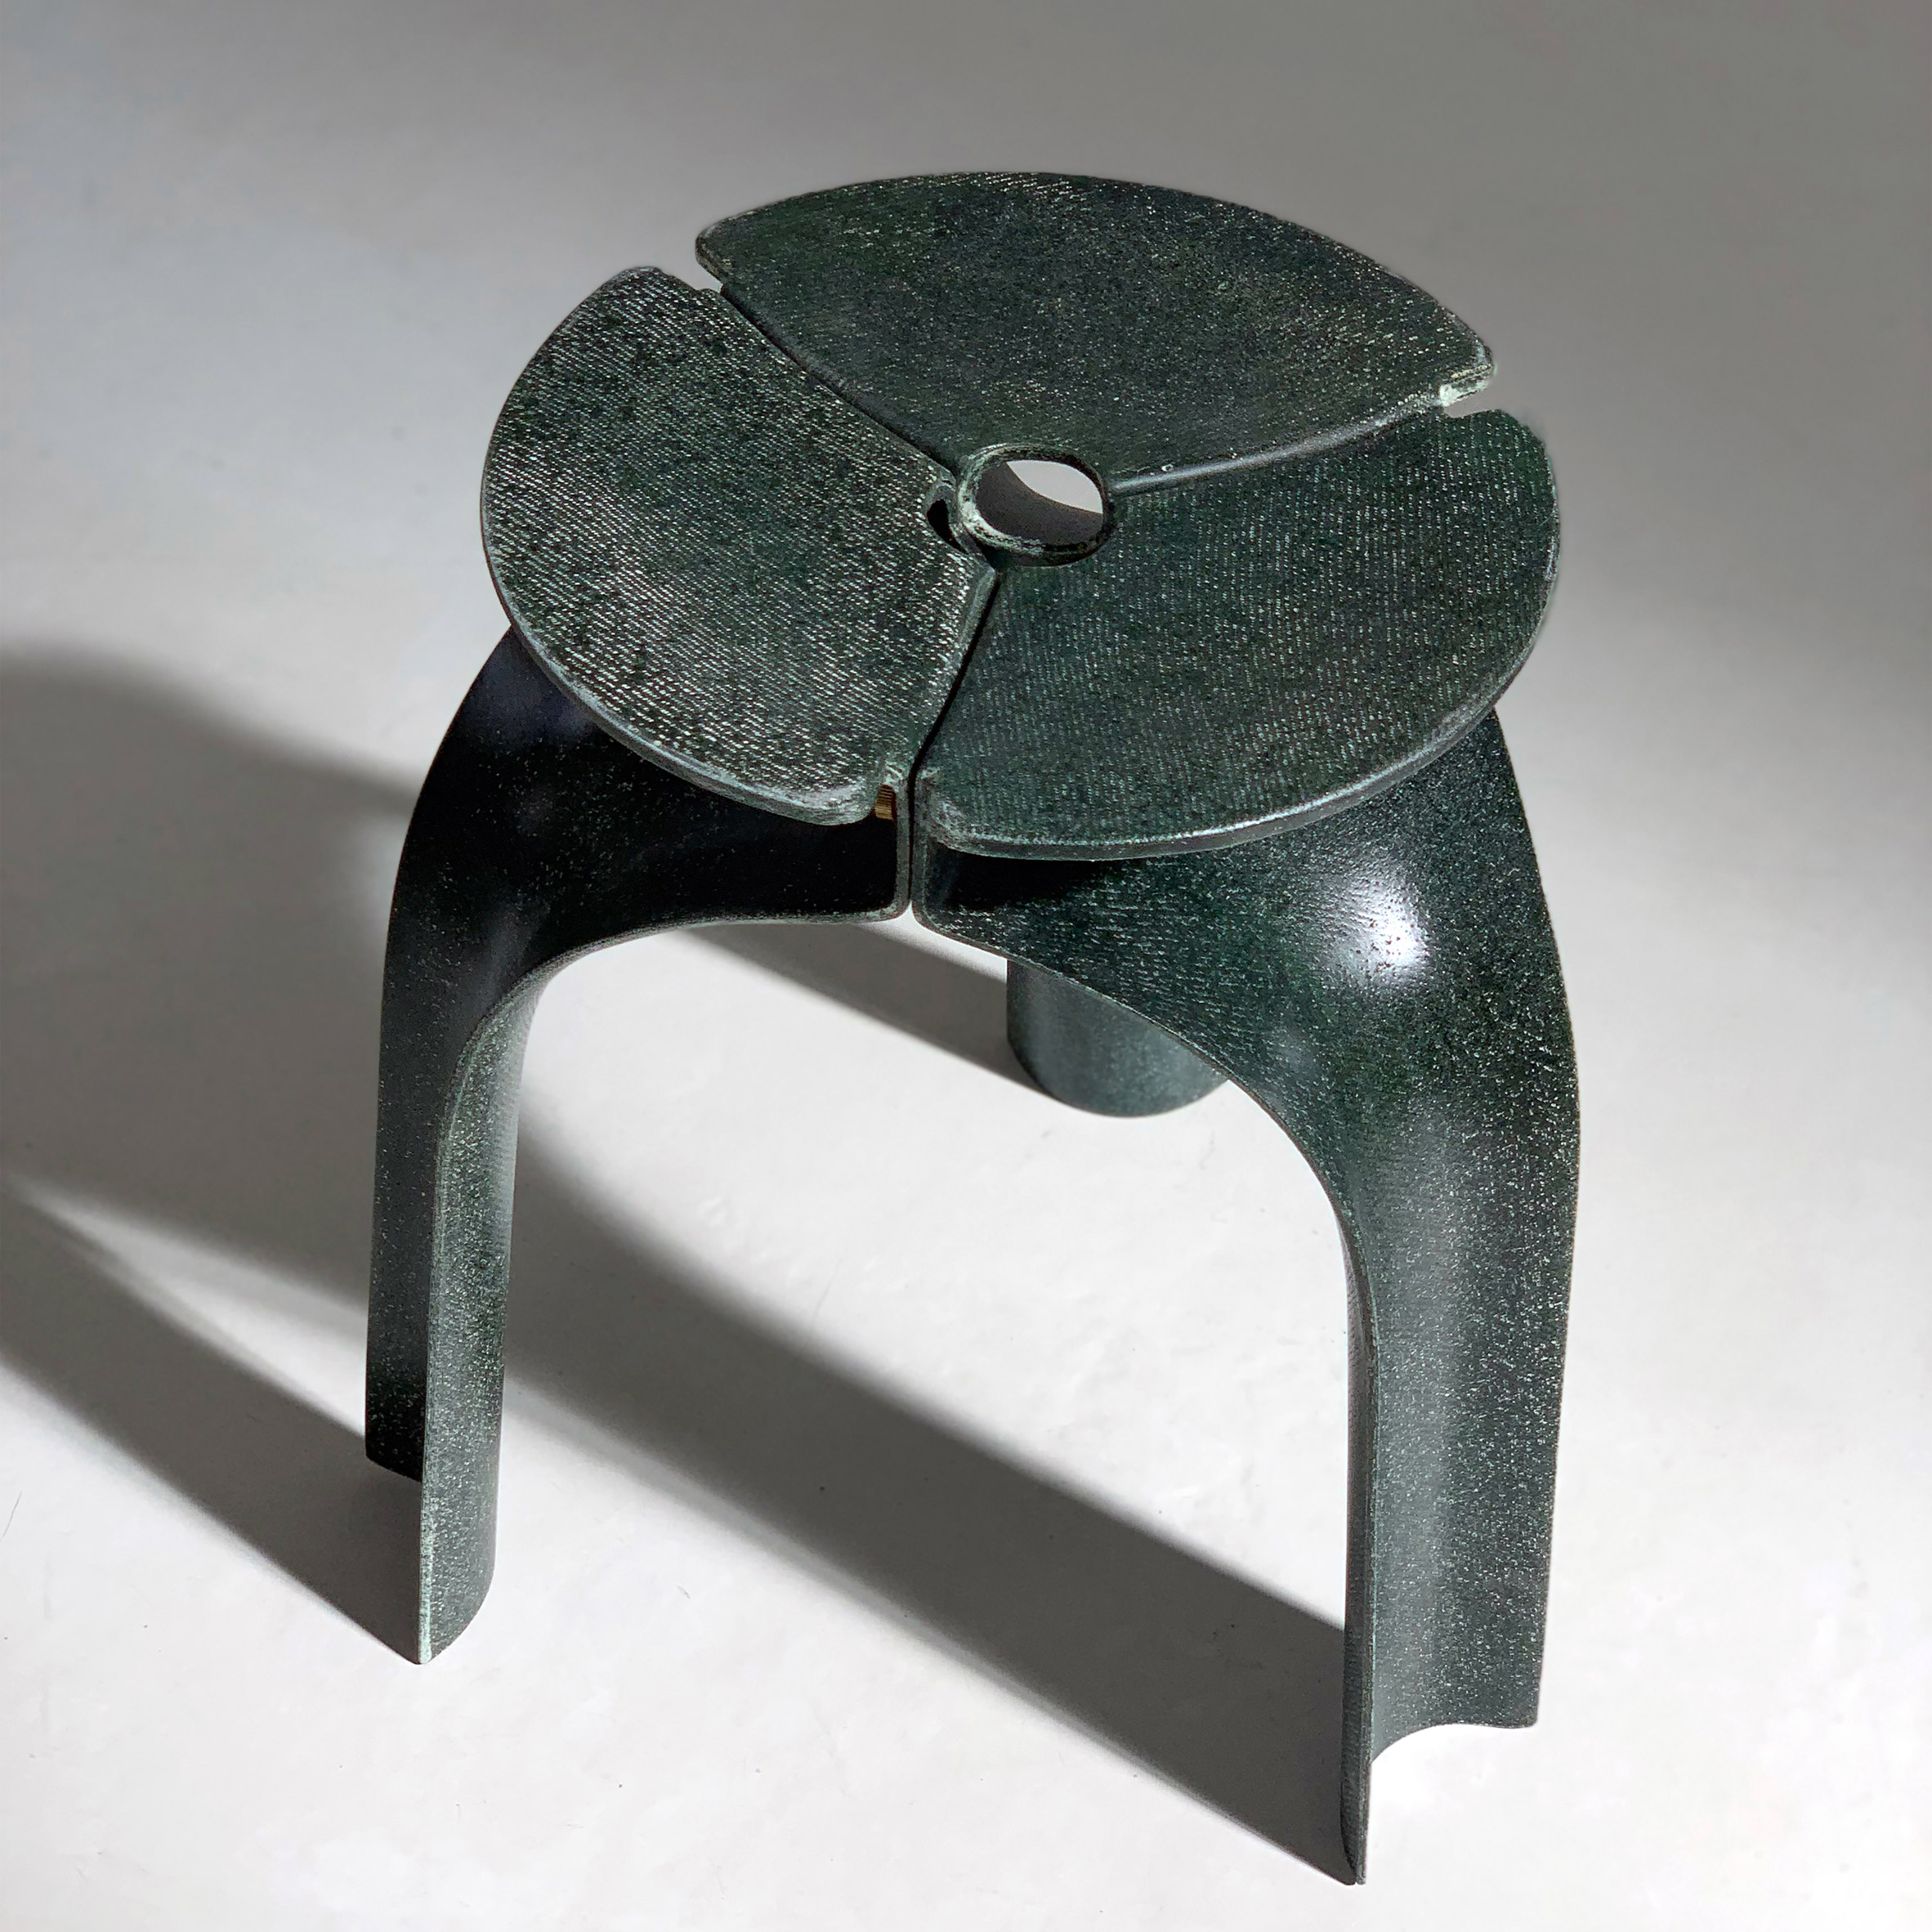 Triplex stool by Studio RYTE